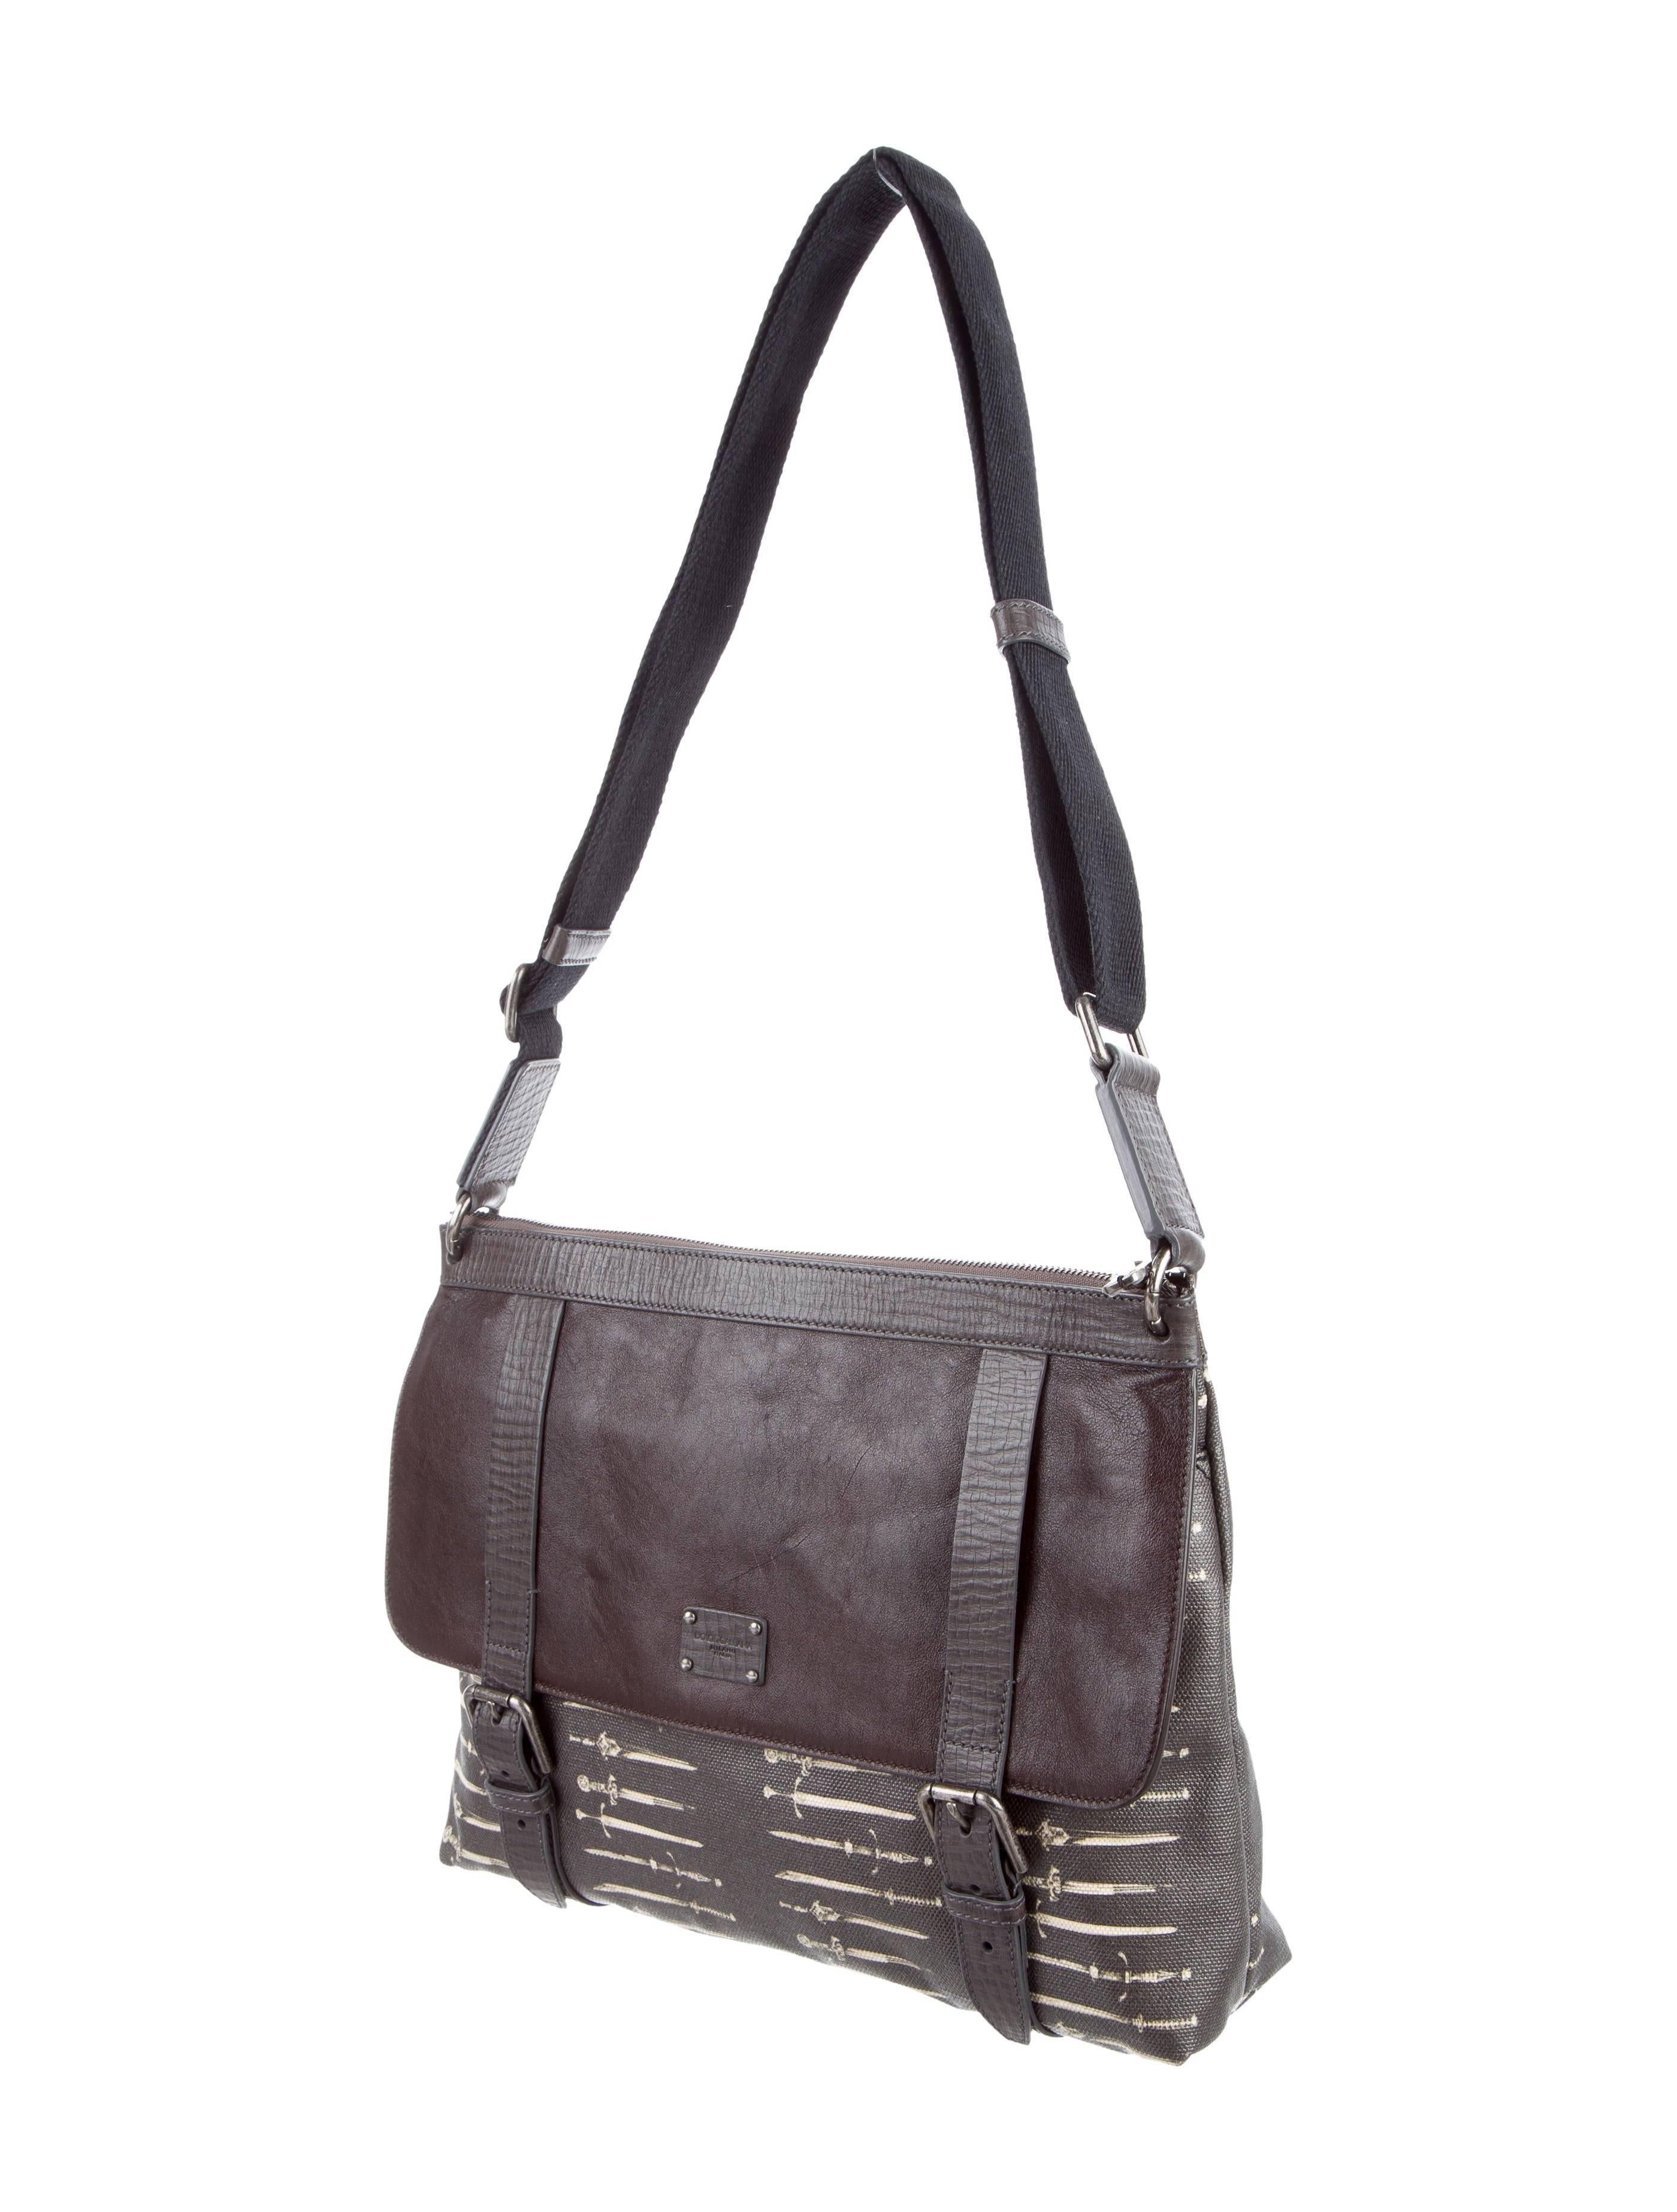 Black Dolce & Gabbana New Brown Leather Canvas Men's Carryall Travel Shoulder Bag